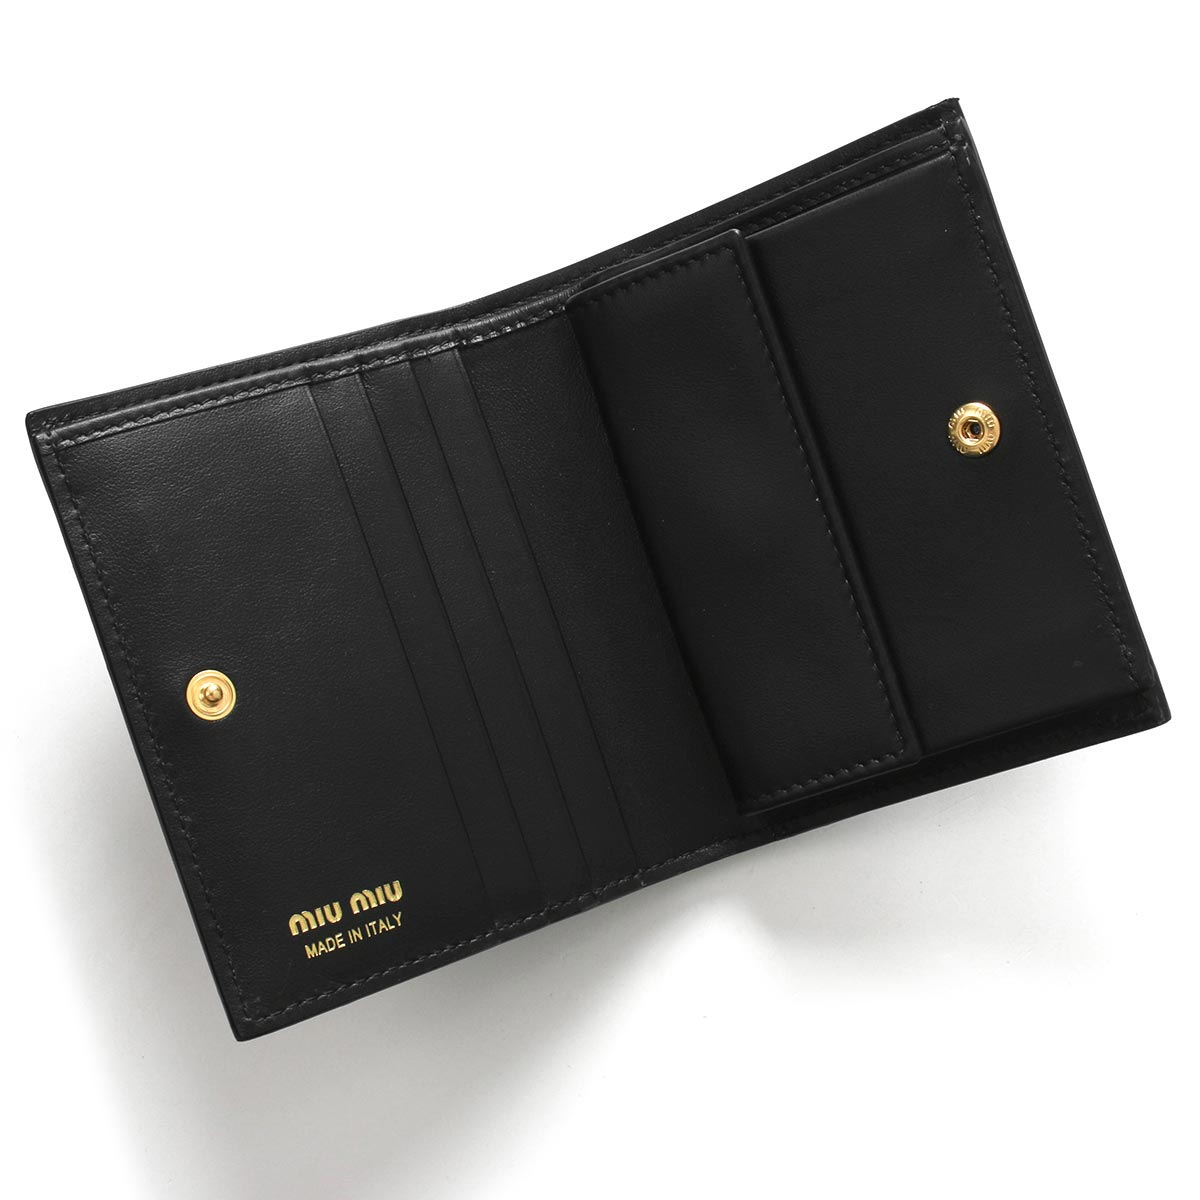 ミュウミュウ 二つ折り財布 財布 レディース ライト カーフ ブラック 5MV204 2CEI F0002 MIU MIU